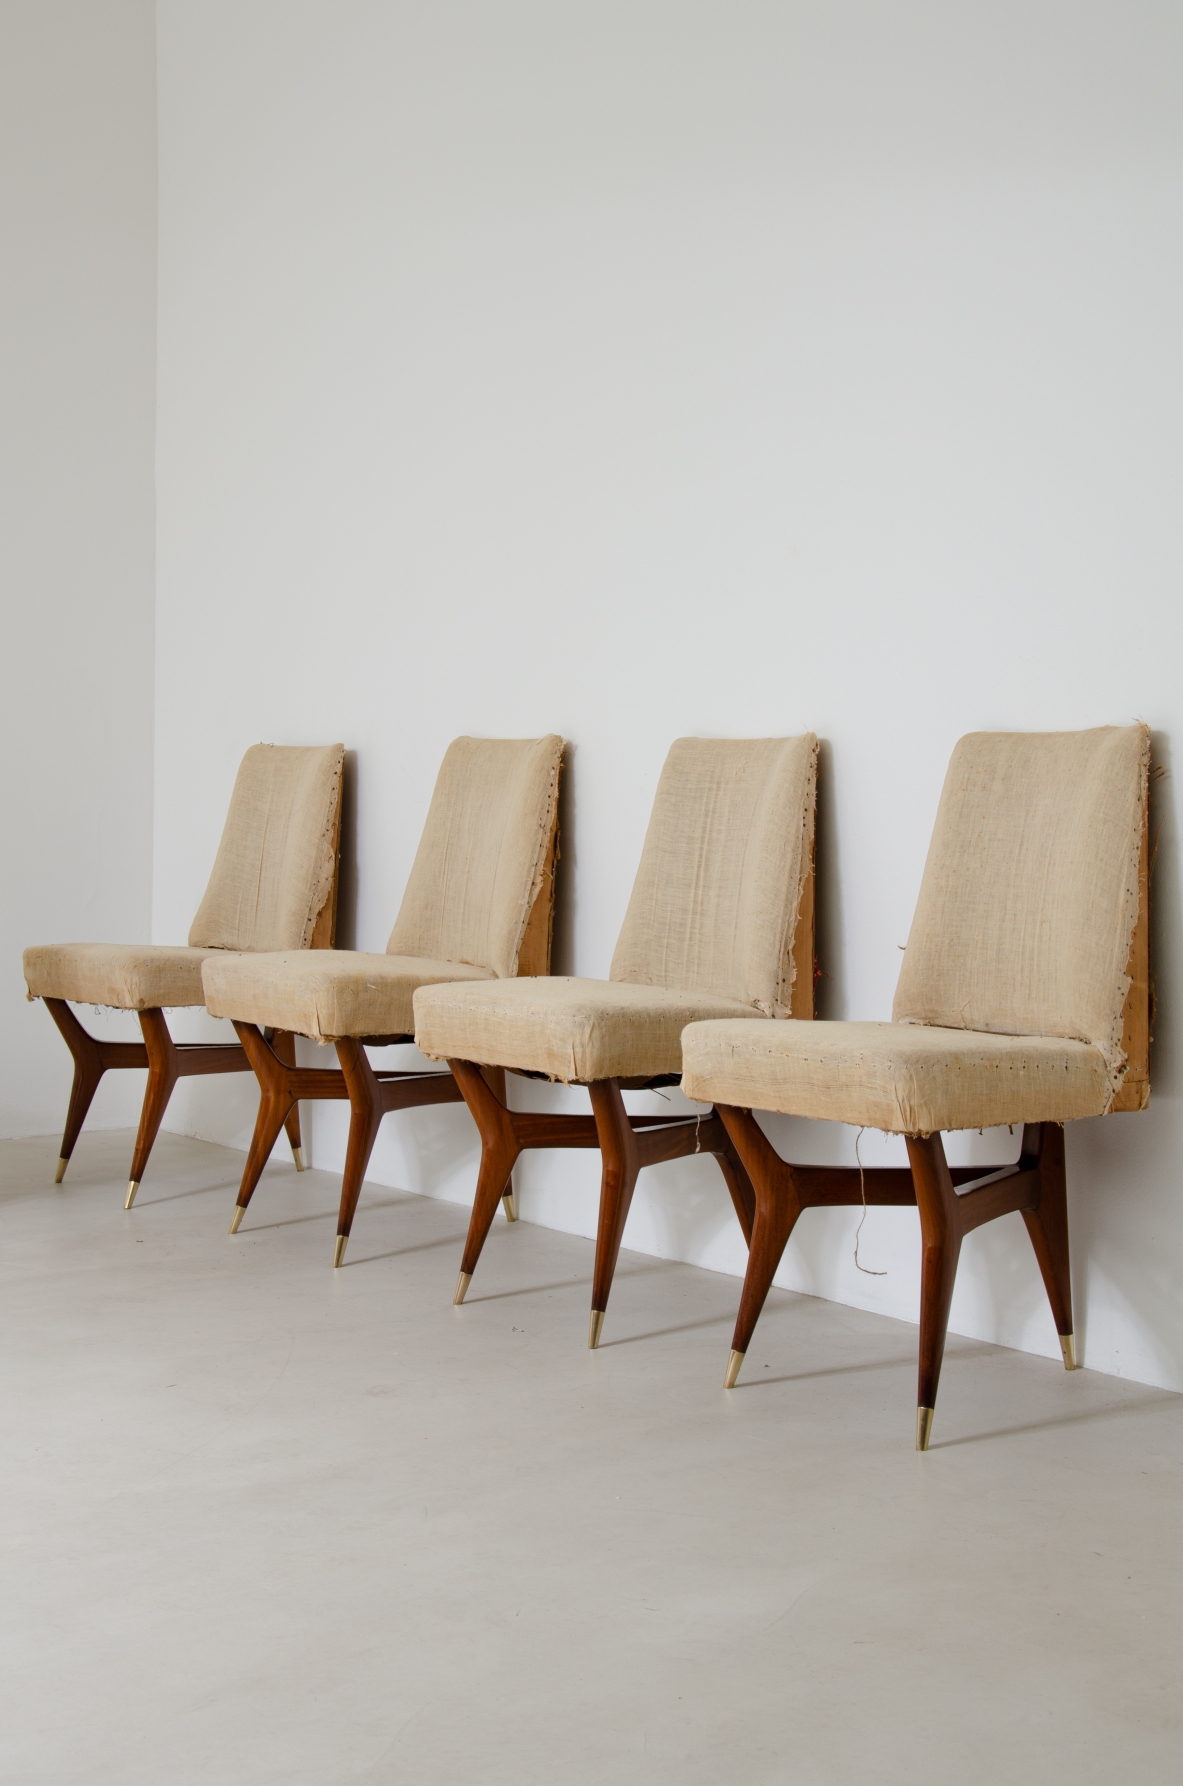 Melchiorre Bega (1898-1976)  Raro set di sei sedie in legno con puntali in ottone e rivestimento in tessuto.  Italia, 1956